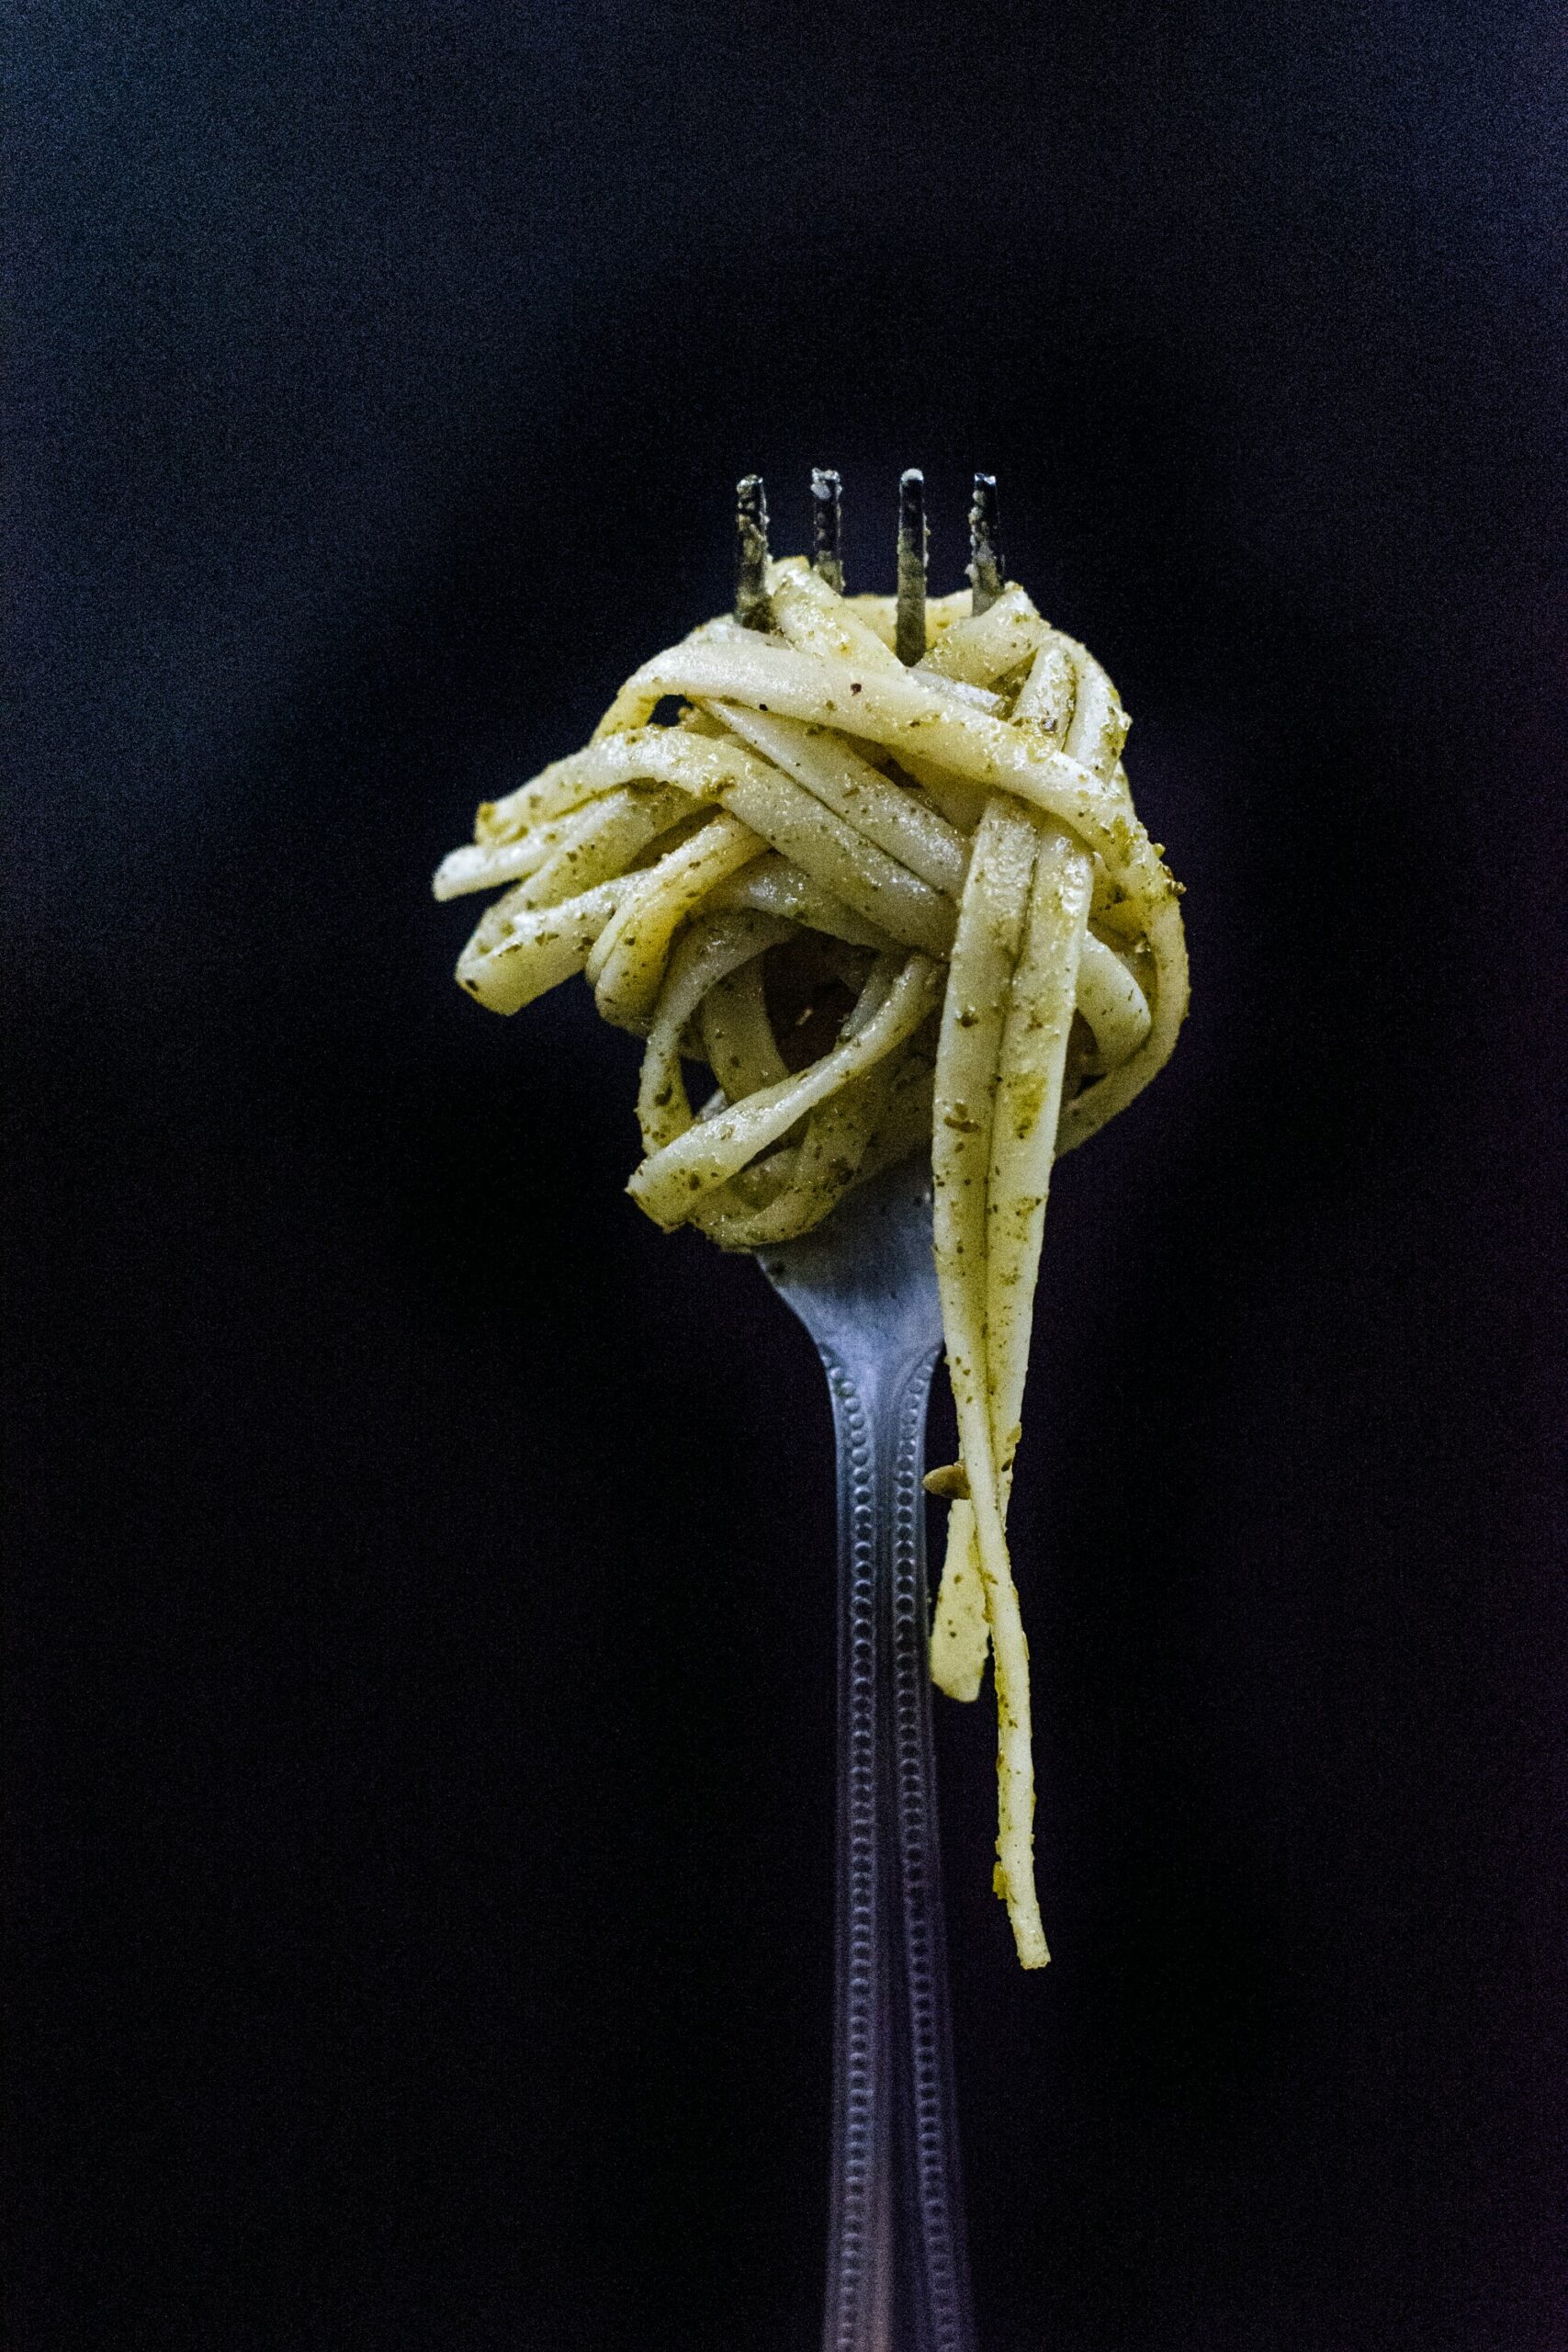 Bild von einer Gabel, die mit frisch zubereiteter Pasta al pesto beladen ist.